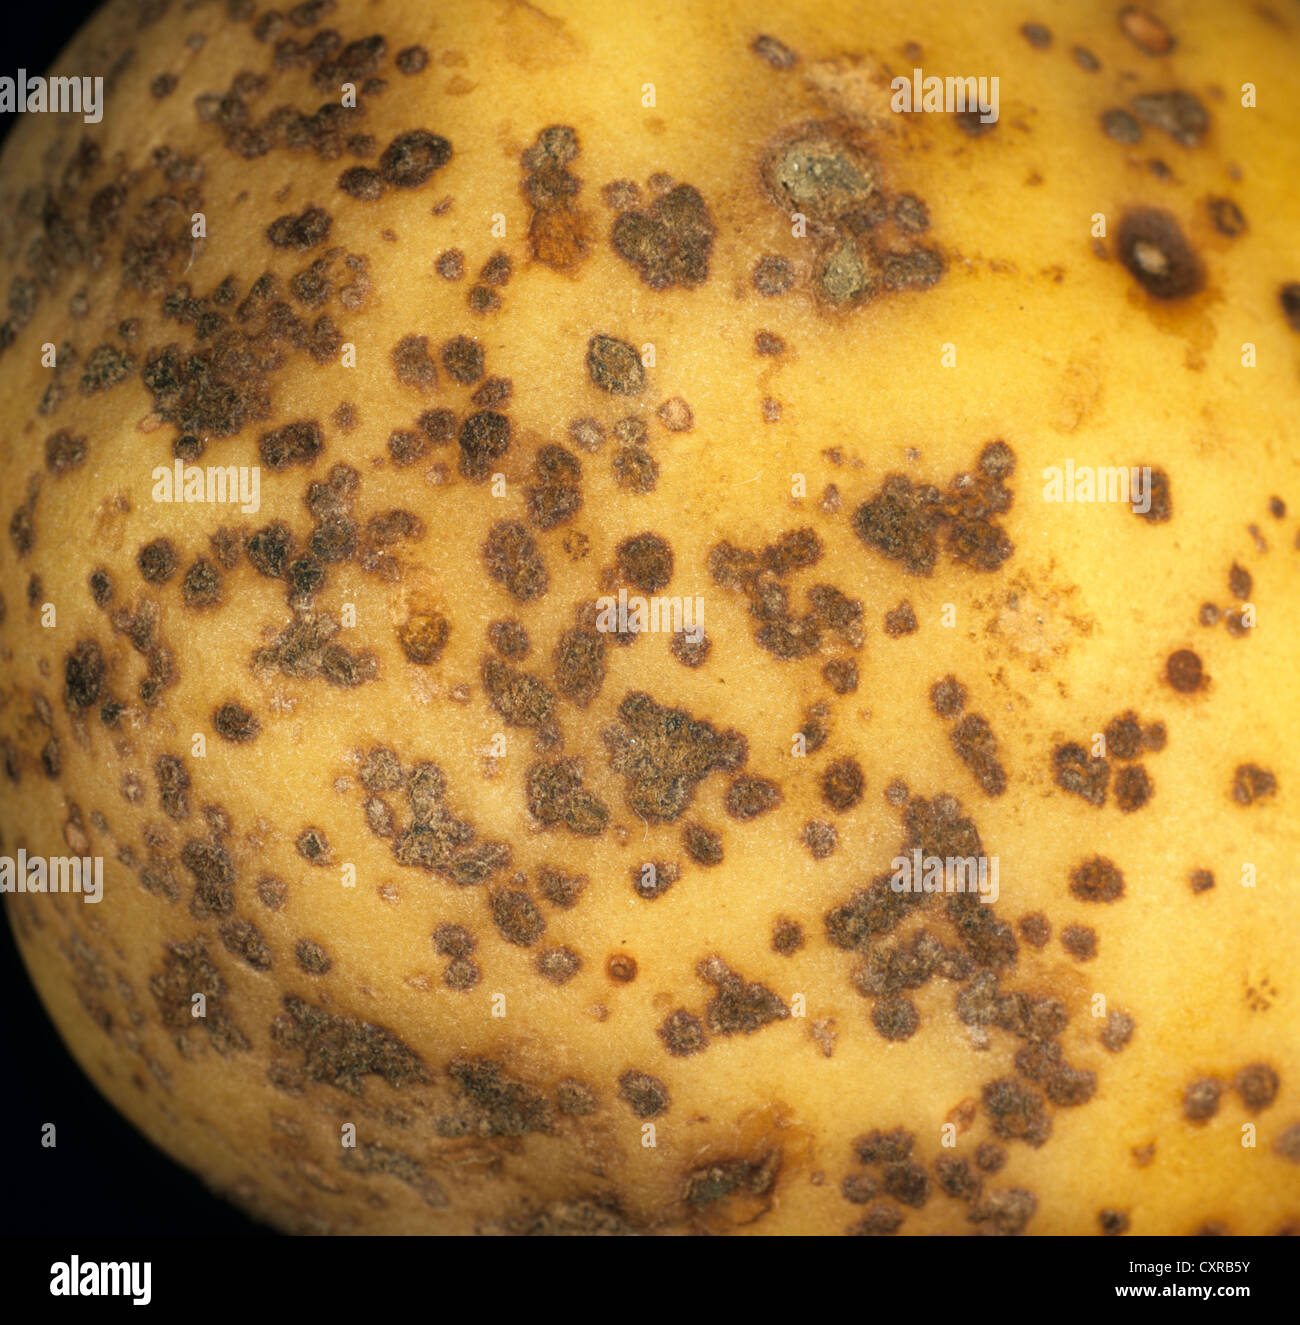 Powdery scab, Spongospora subterranea, lesions on a potato tuber Stock Photo